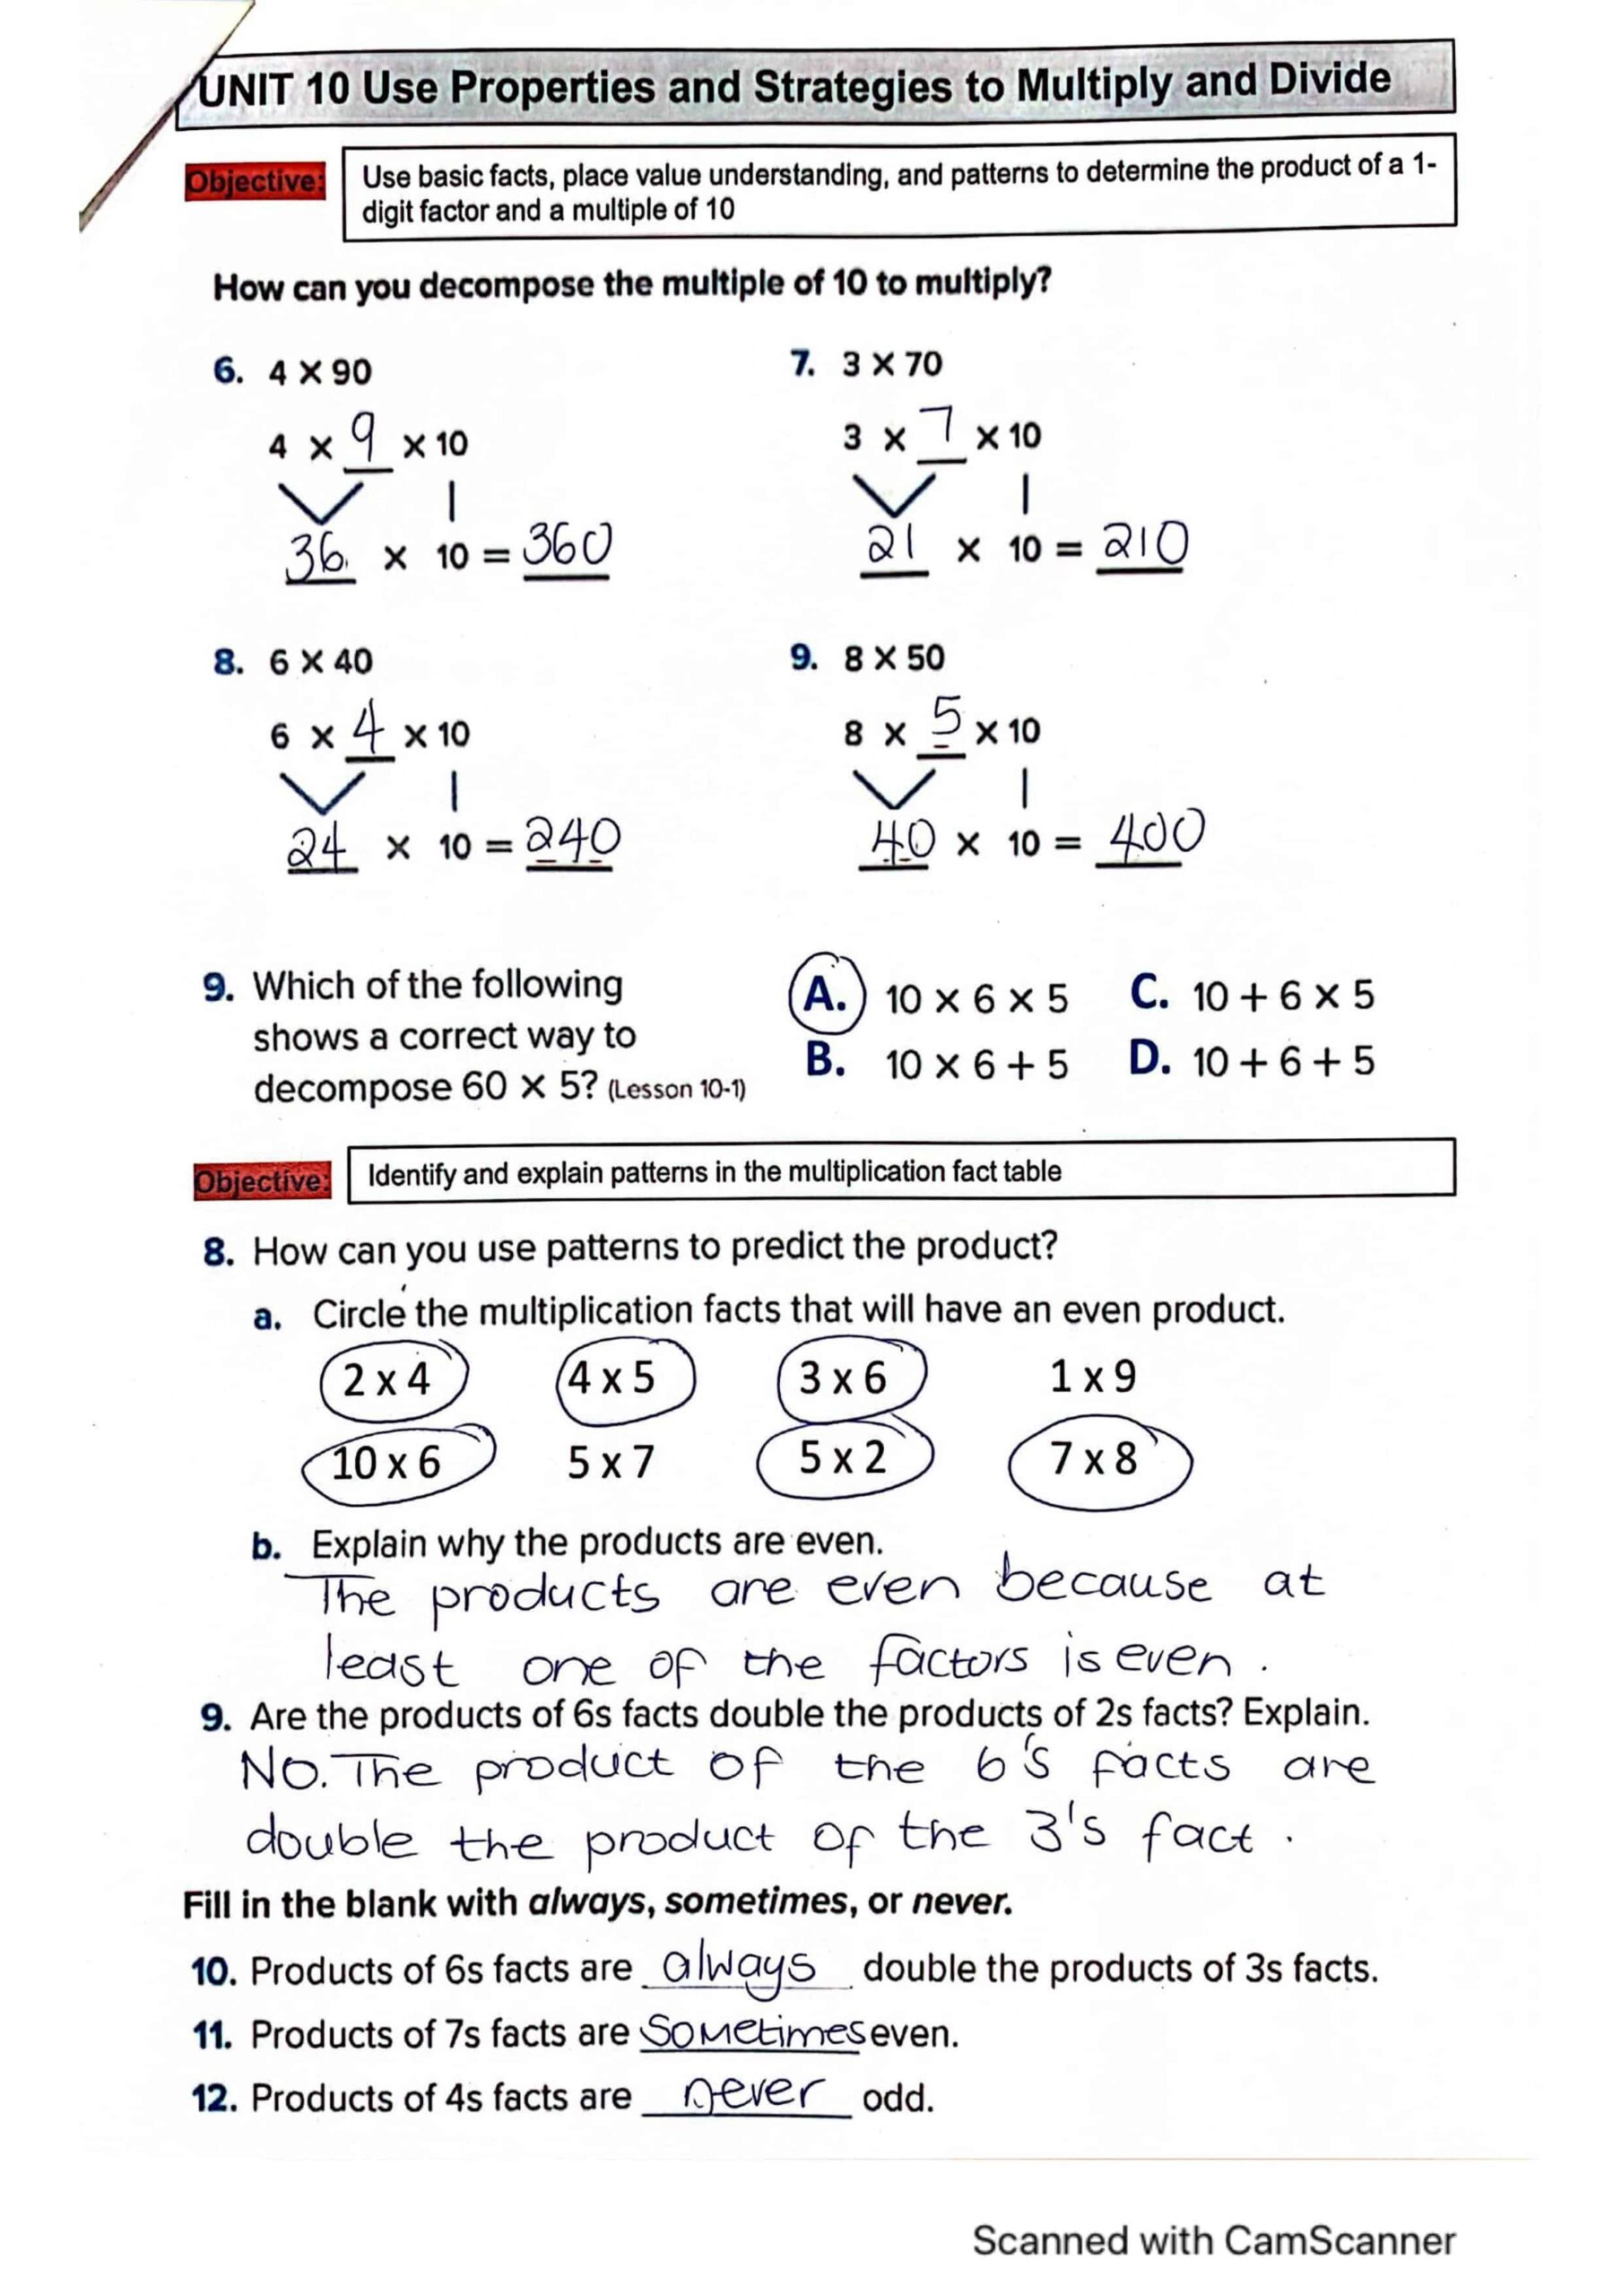 حل أوراق عمل للامتحان النهائي الرياضيات المتكاملة الصف الثالث